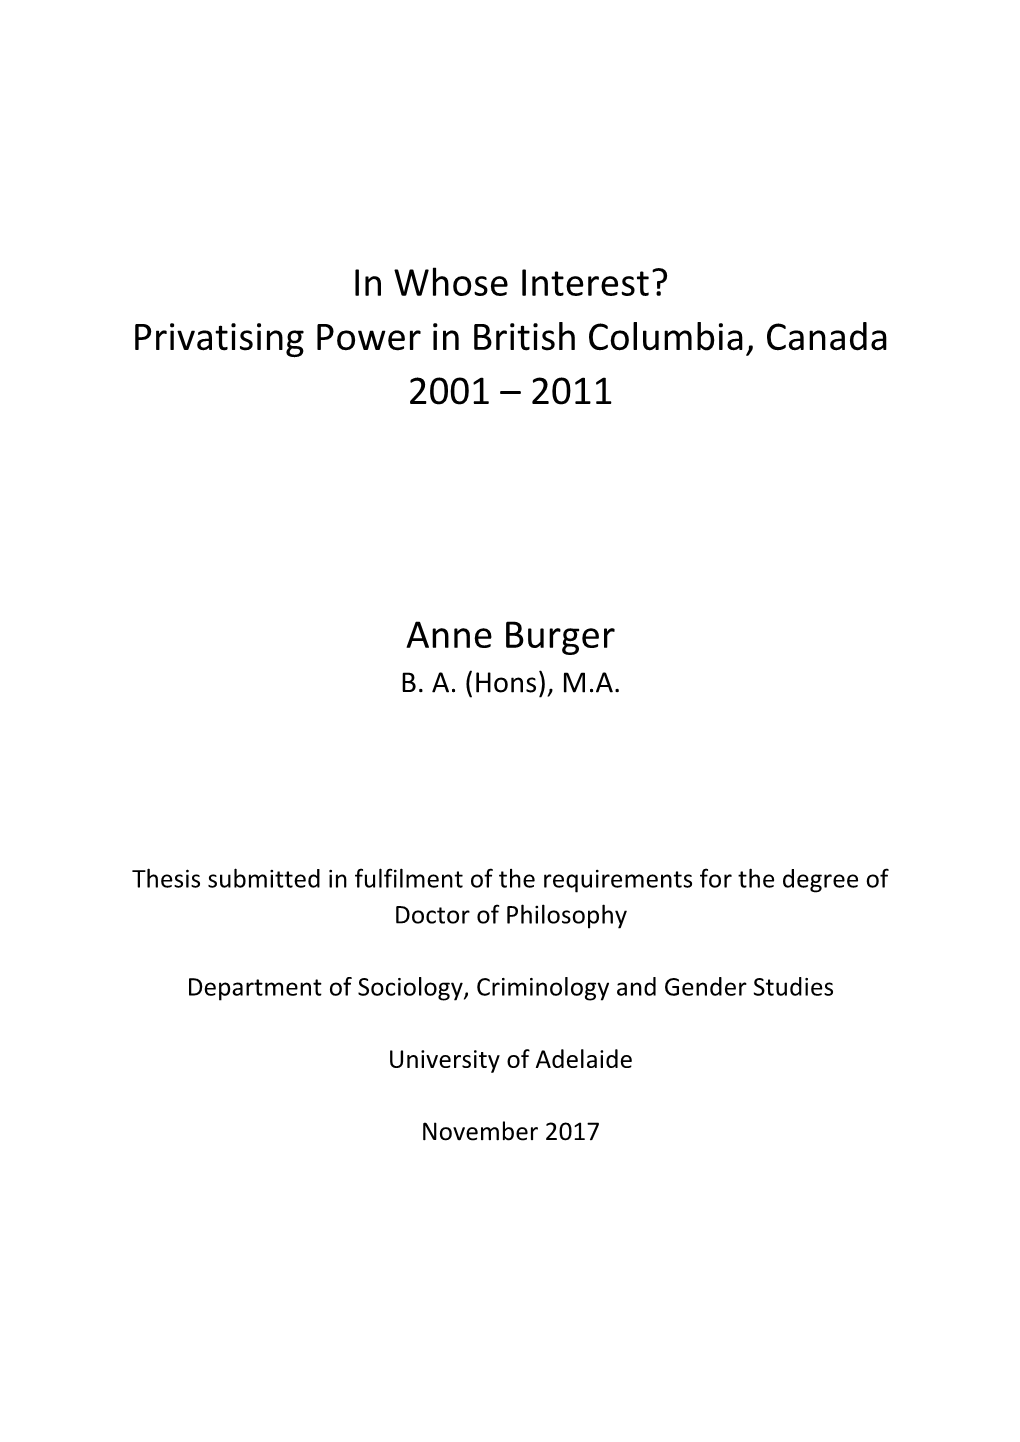 Privatising Power in British Columbia, Canada 2001 – 2011